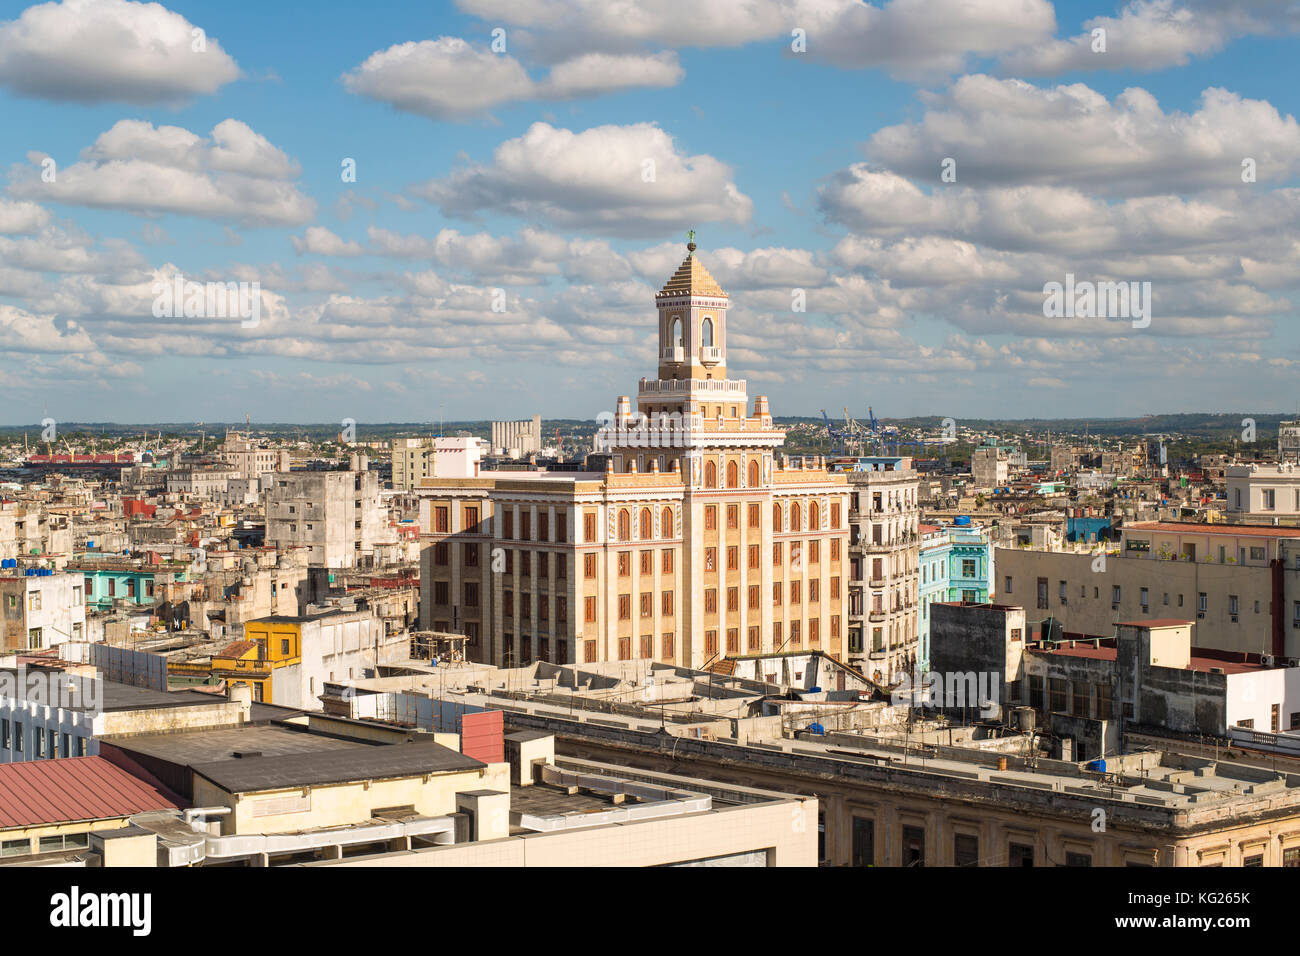 Architektur von einem erhöhten Blick in der Nähe des Malecon, Havanna, Kuba, Karibik, Mittelamerika Stockfoto